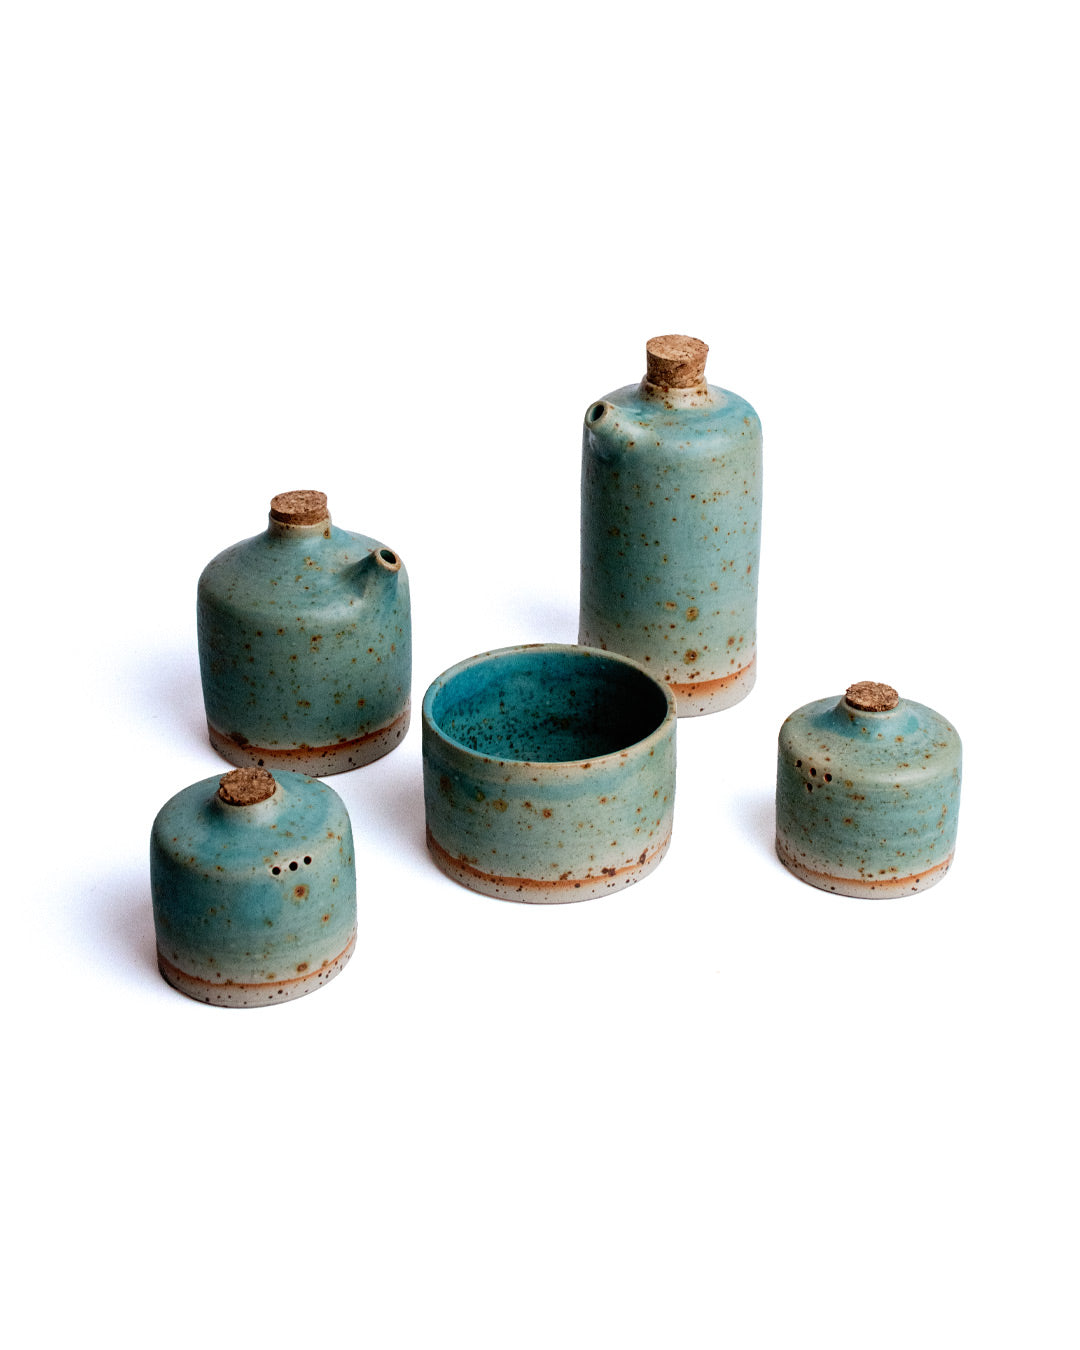 Ceramic handcrafted oil and vinegar  pinzimonio cruets